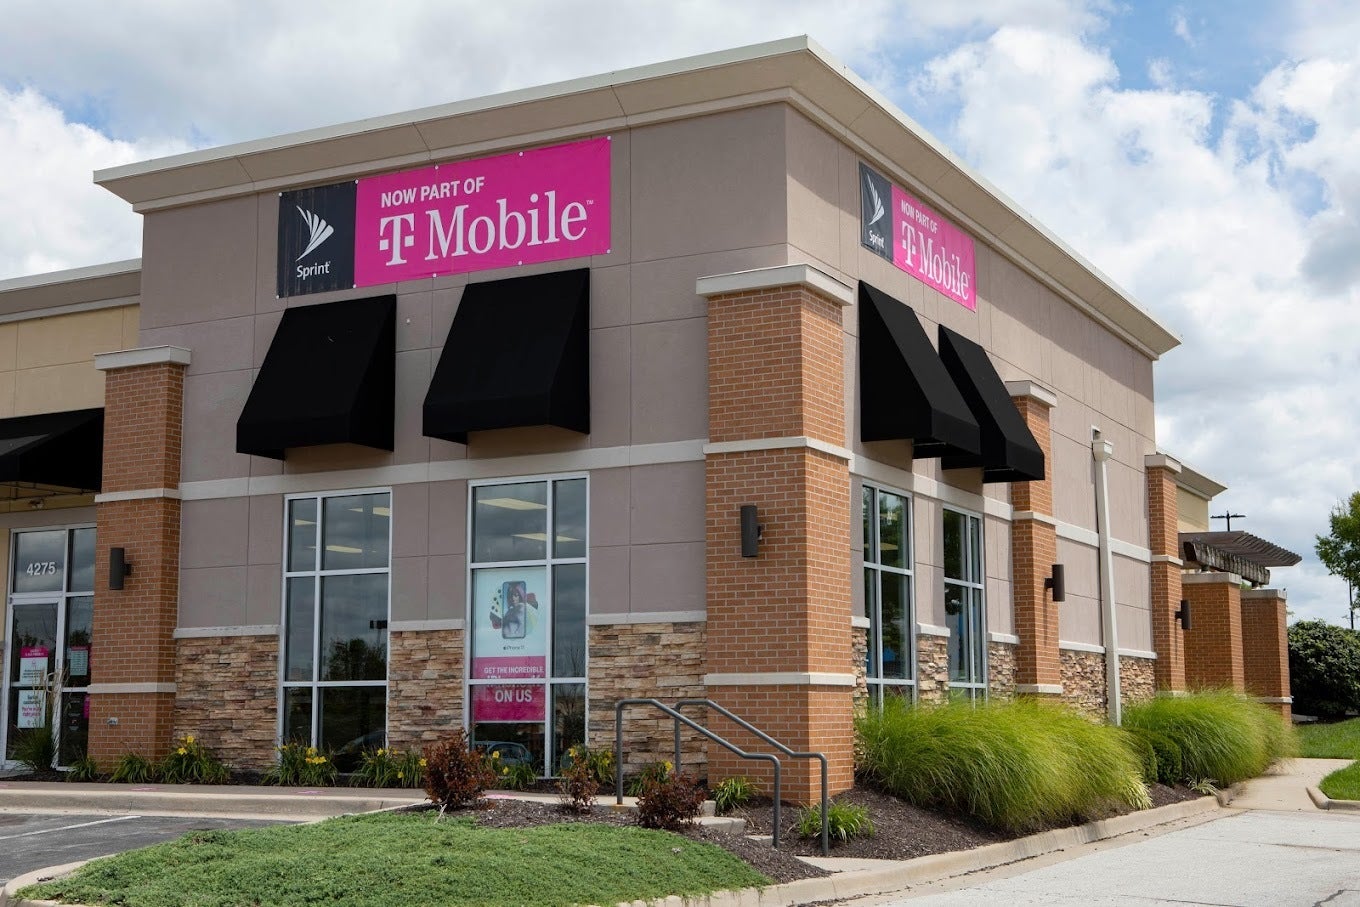 Point de vente agréé T-Mobile appartenant à Wireless Vision - T-Mobile met les concessionnaires en colère en apportant des changements drastiques à la rémunération